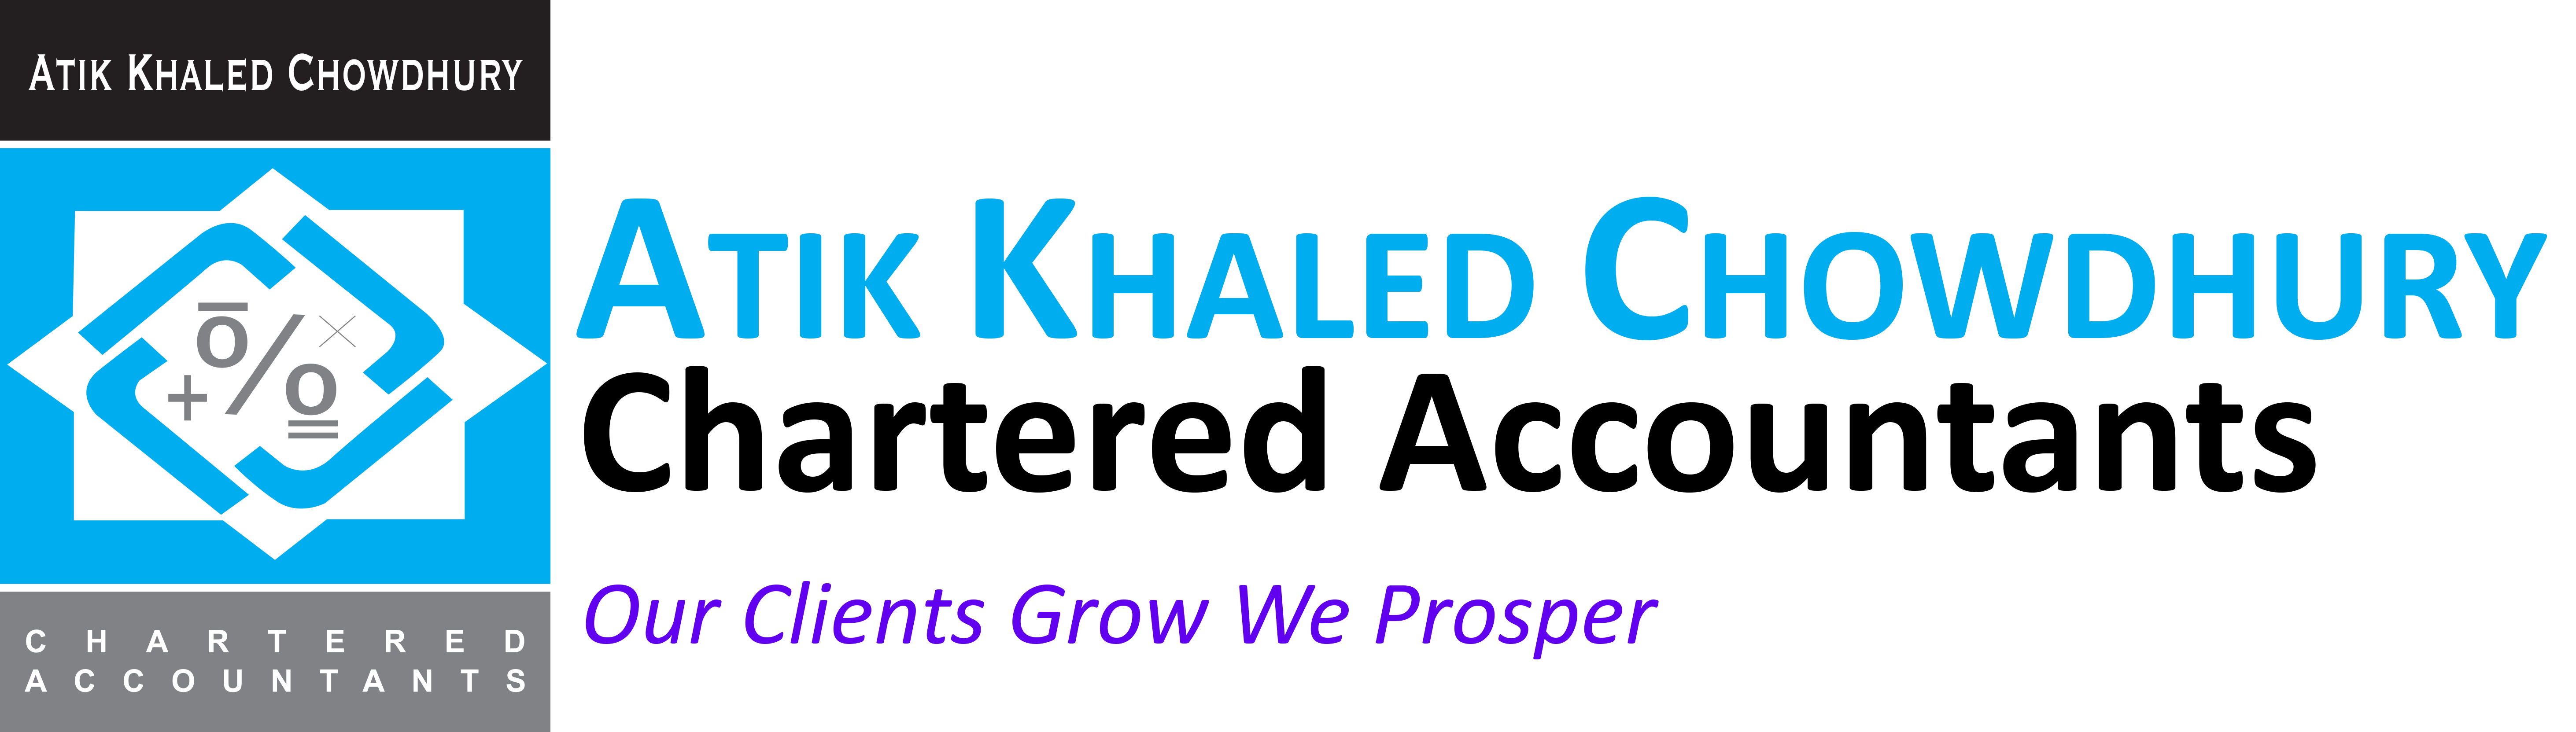 Our Clients Grow We Prosper